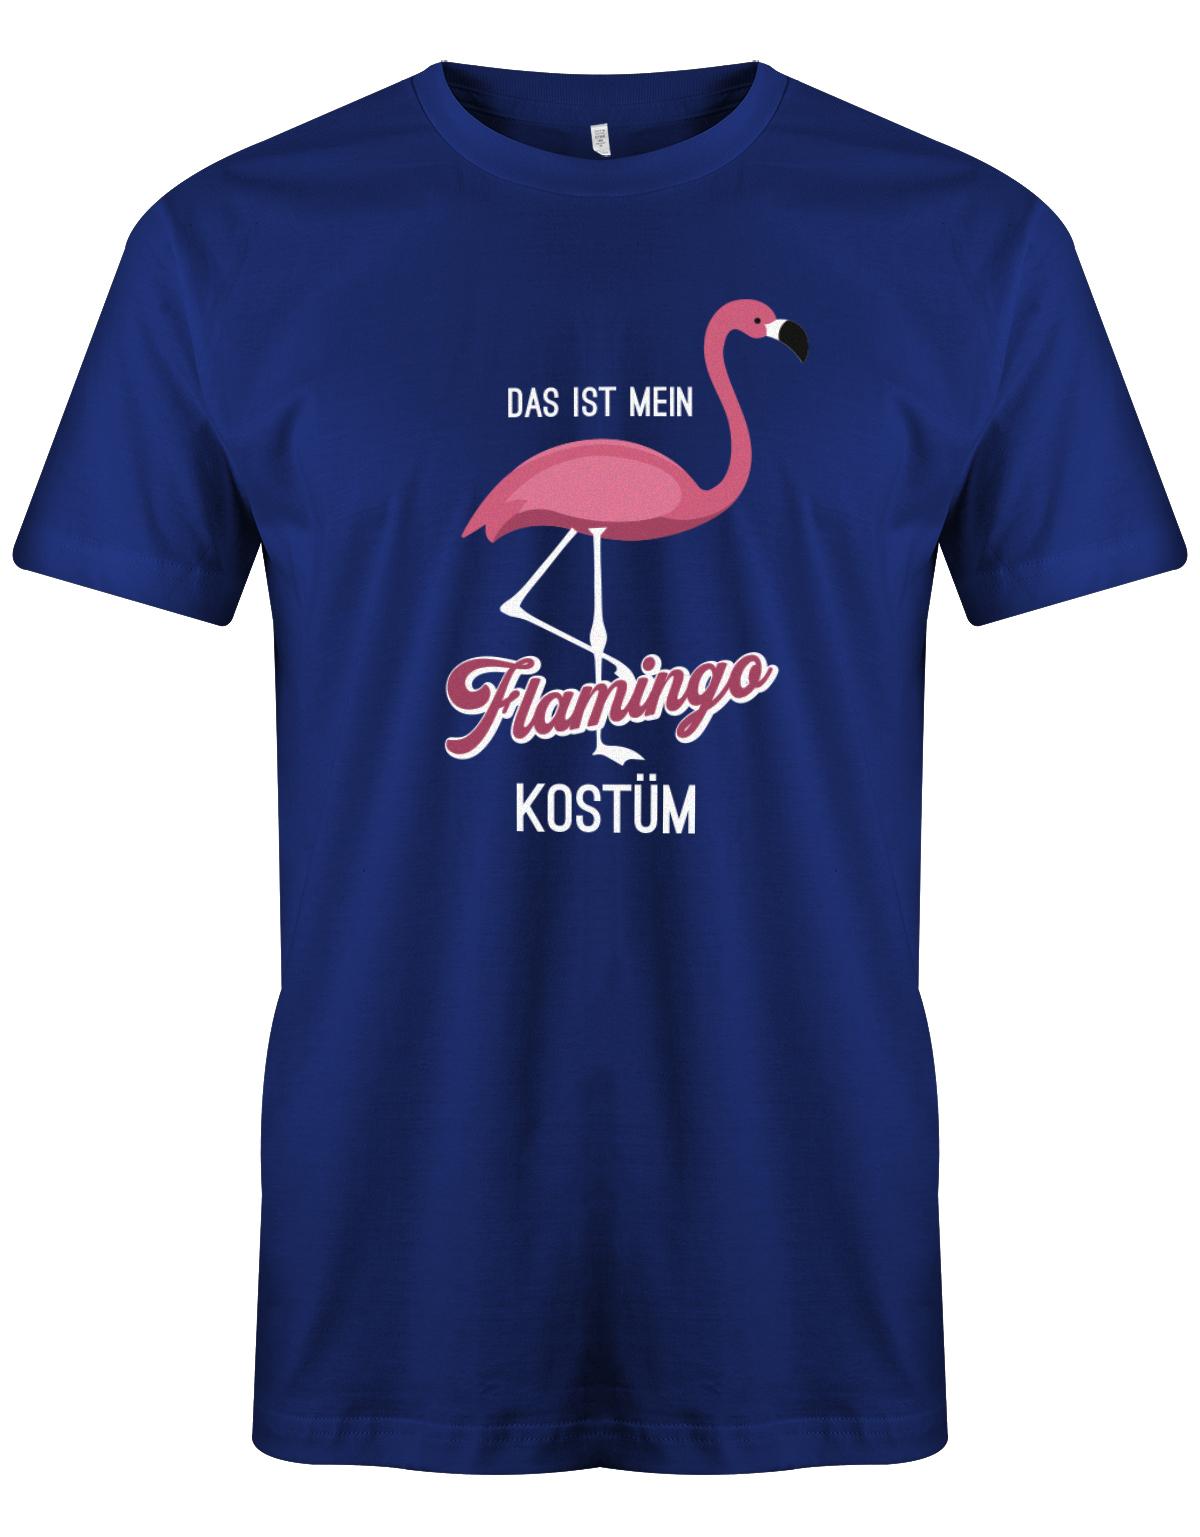 Das-ist-mein-Flamingo-Kost-m-Fasching-Karneval-Verkleidung-Shirt-Herren-Royalblau